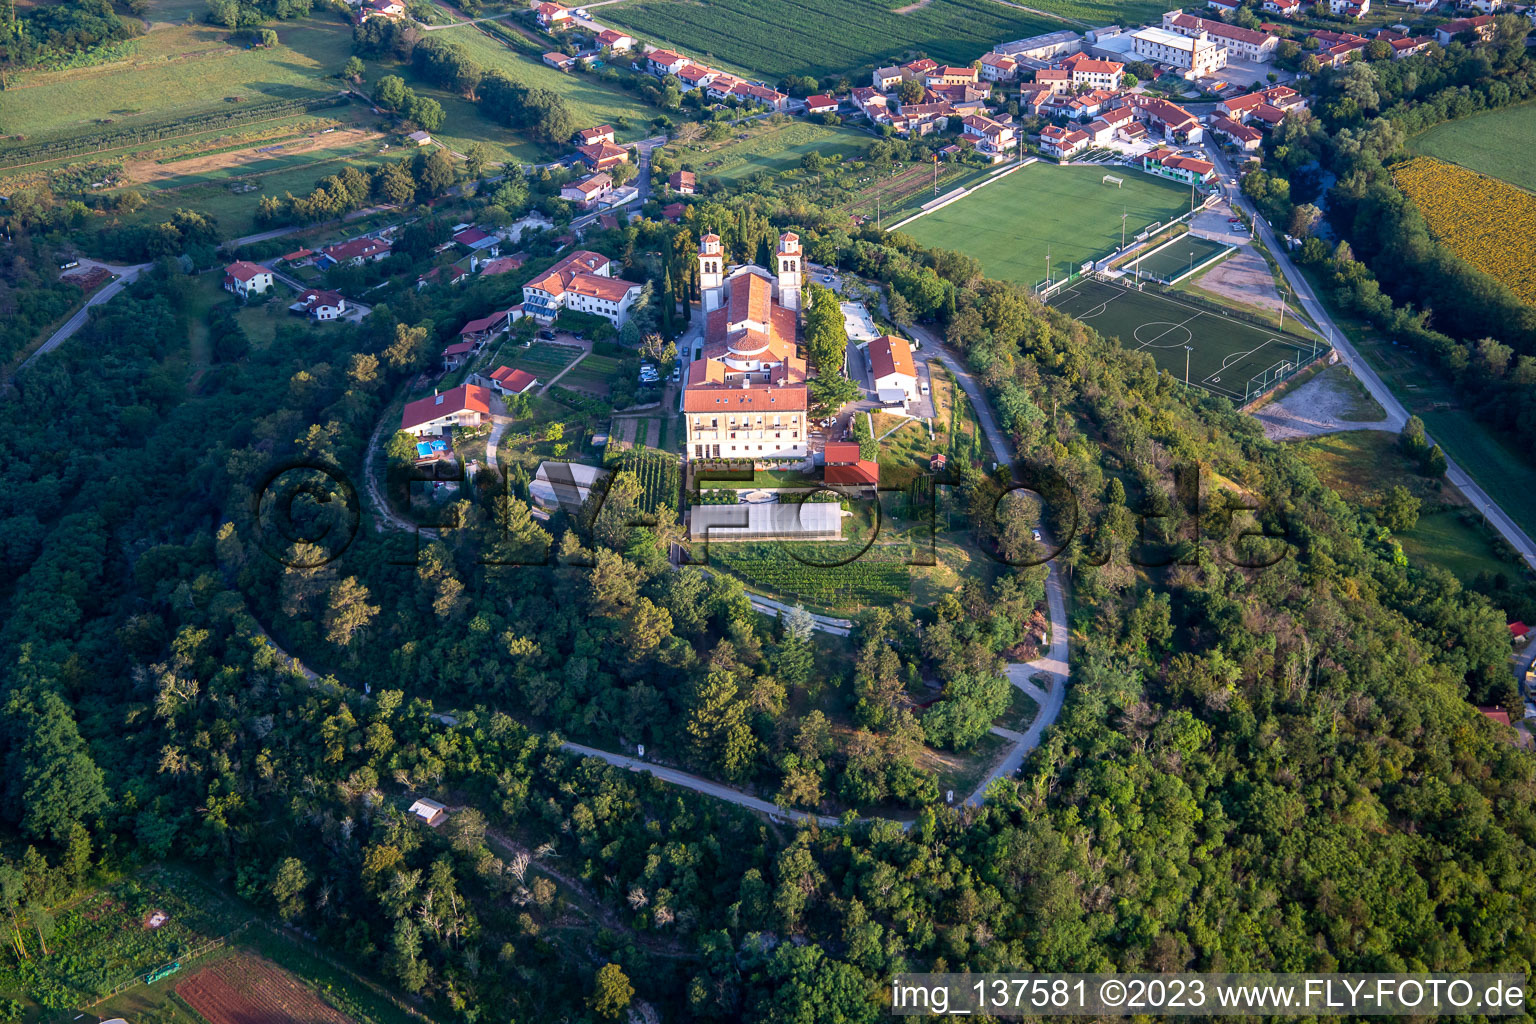 Luftbild von Miren Castle / Mirenski grad in Miren-Kostanjevica, Slowenien